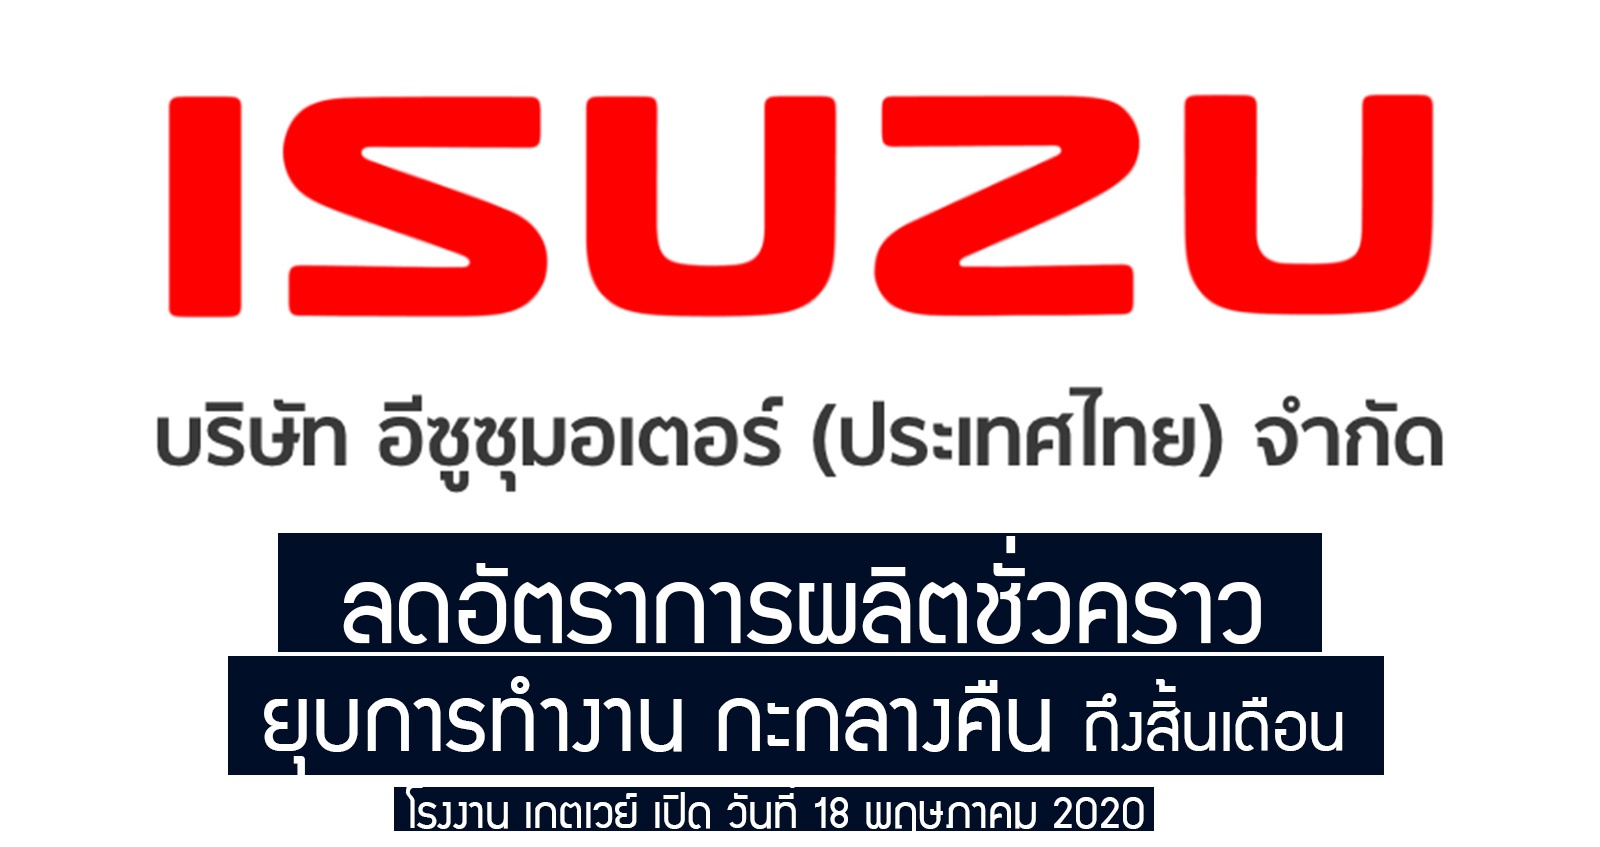 ISUZU ประเทศไทย เปิดโรงงาน ลดกำลังผลิต ยุบกะกลางคืน ชั่วคราว ลดอัตราการทำงาน